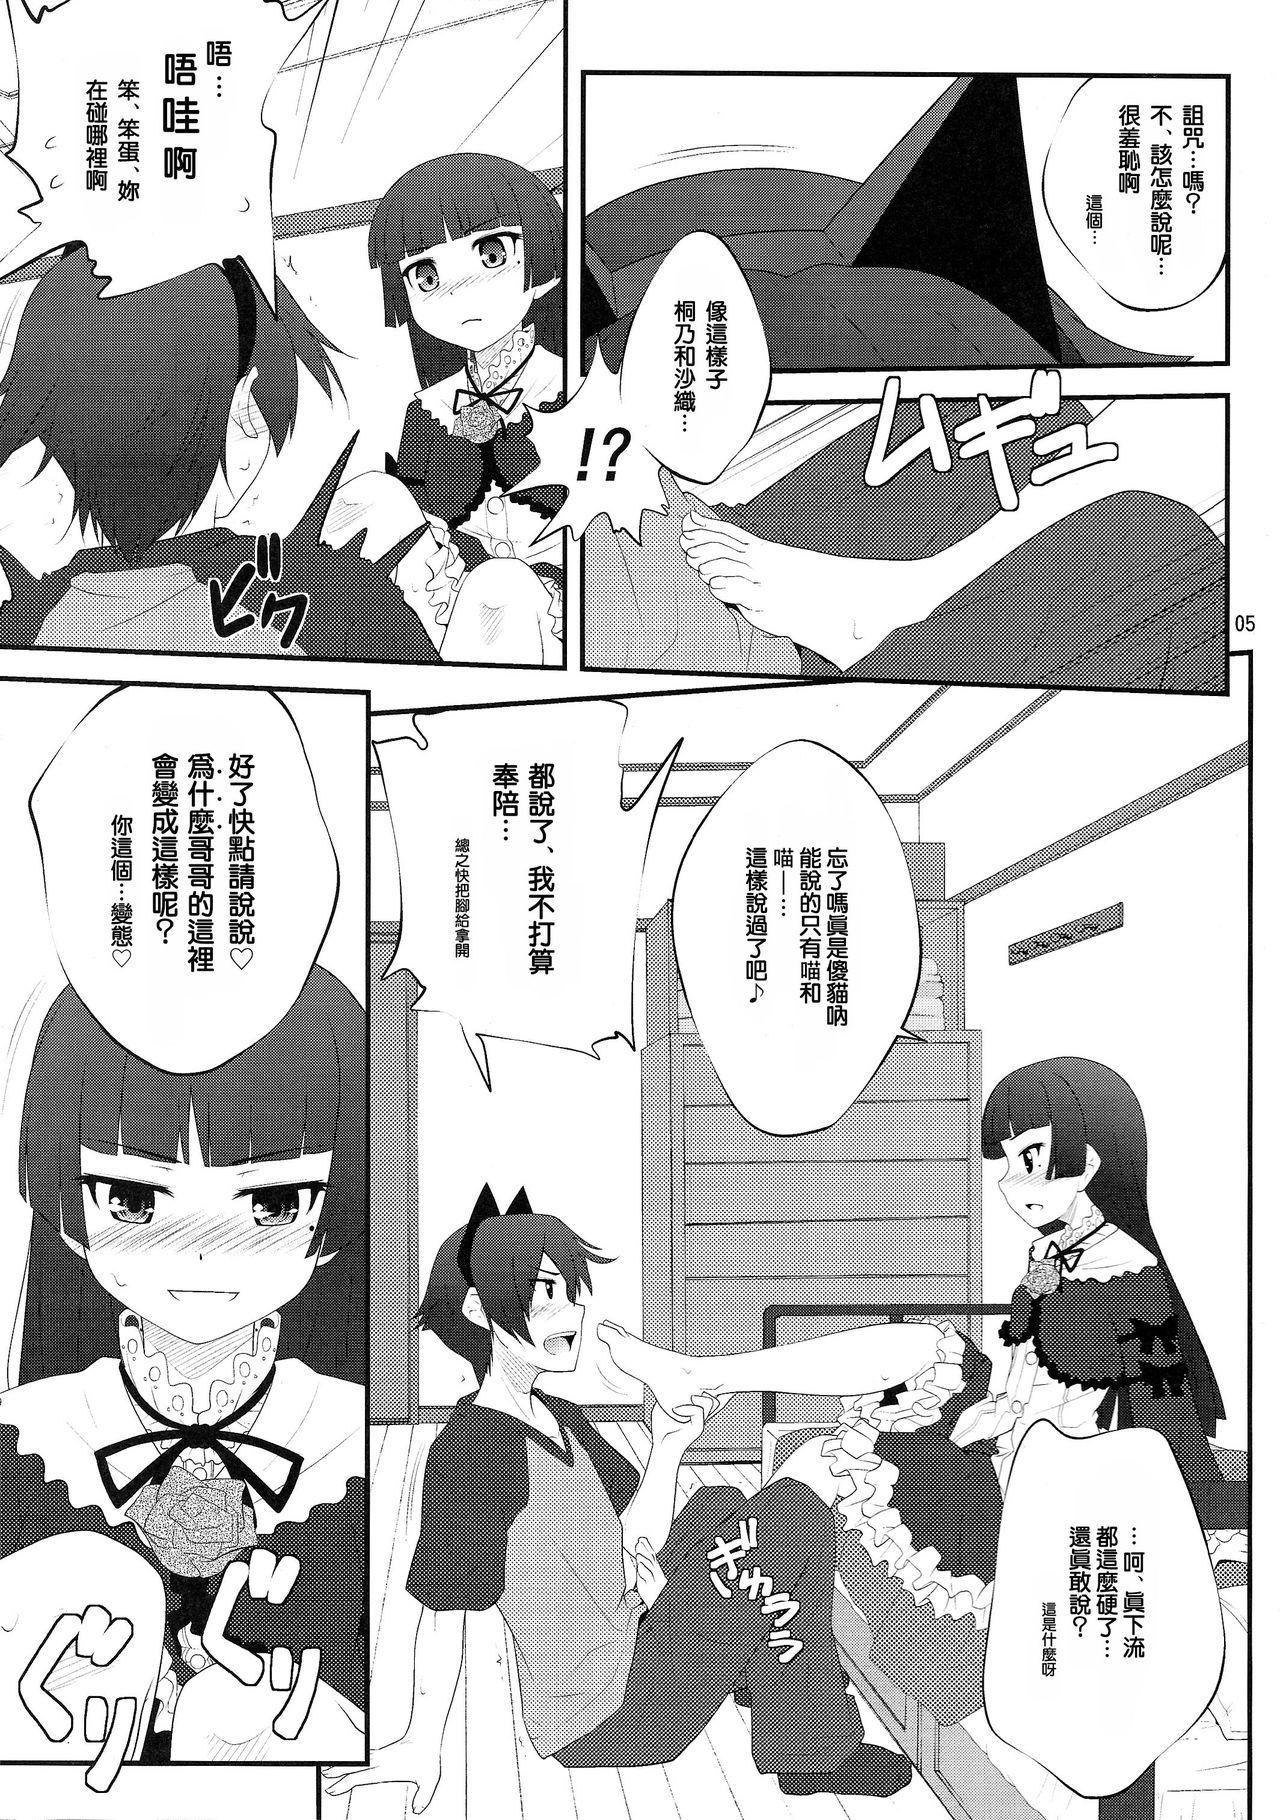 Huge Cock Nii-san, Ashi Monde Choudai After - Ore no imouto ga konna ni kawaii wake ga nai X - Page 5